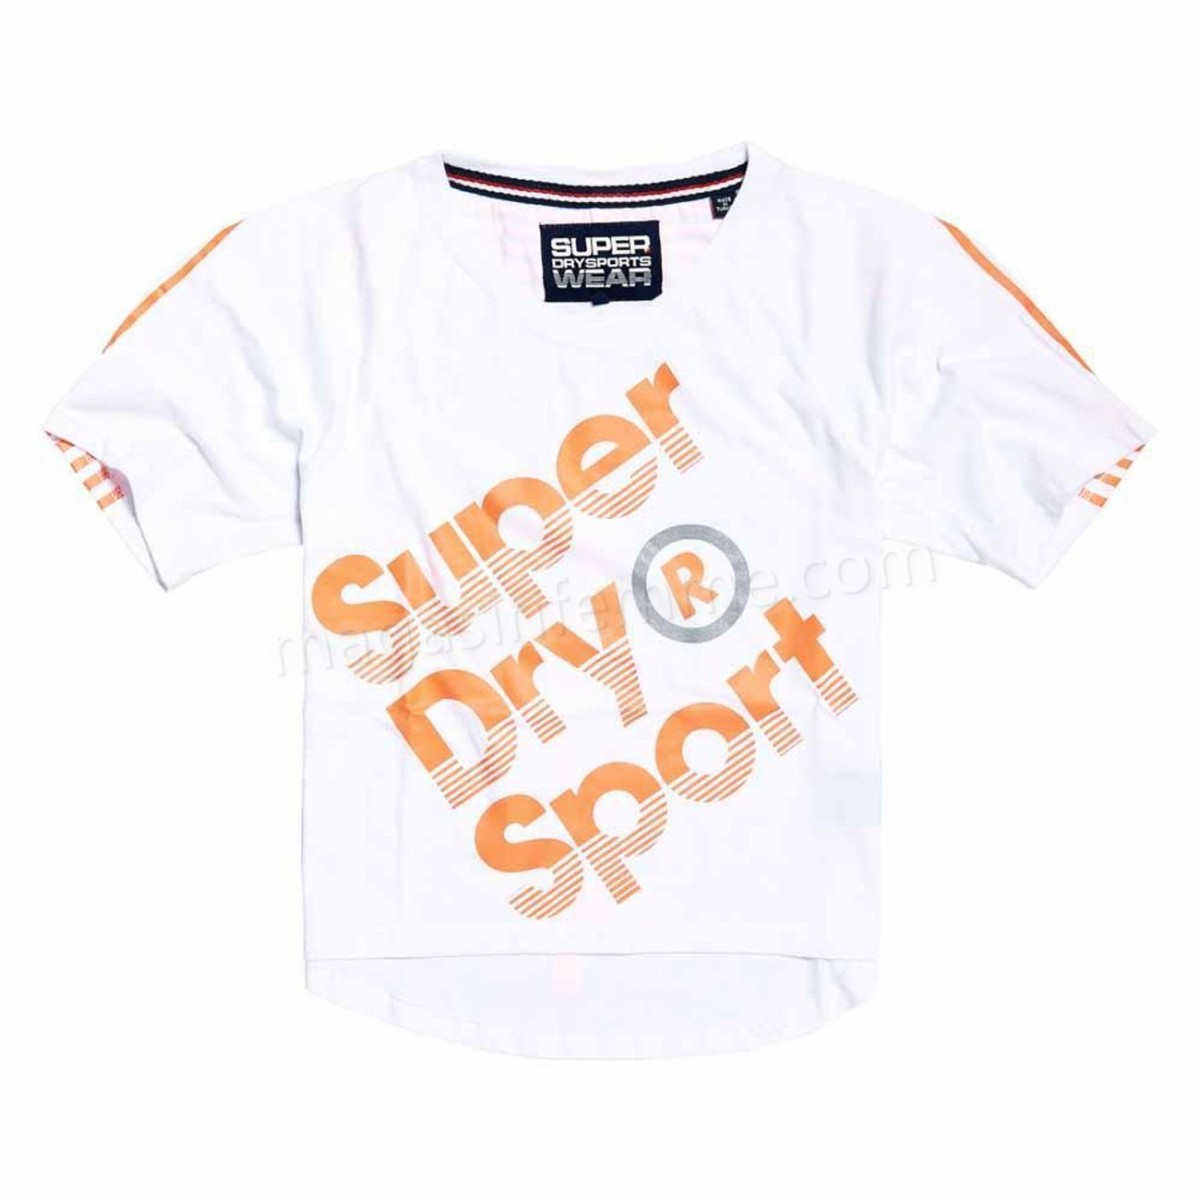 Superdry-Fitness femme SUPERDRY Superdry Sport Label Hot en solde - -0